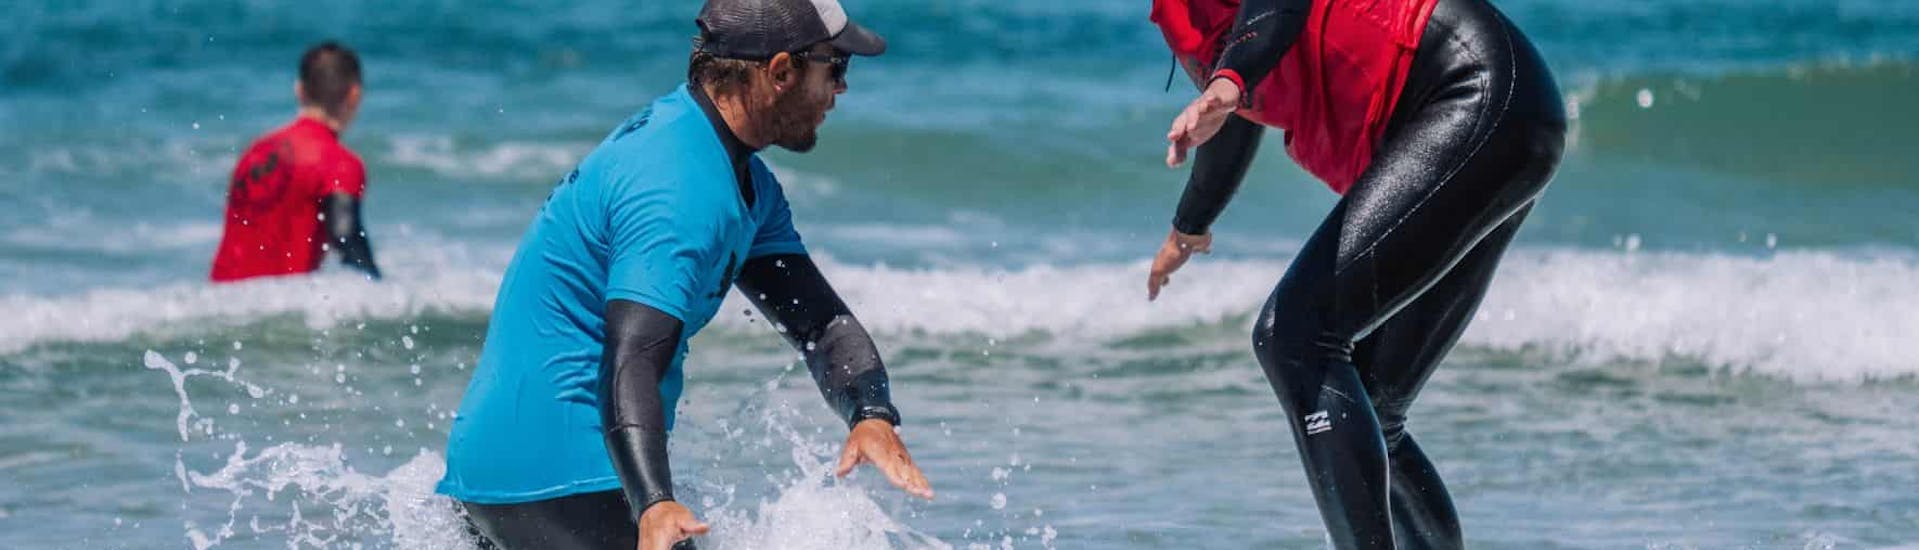 Iemand die de surflessen vanaf 7 jaar in Lagos volgt die georganiseerd zijn door Algarve Watersports.